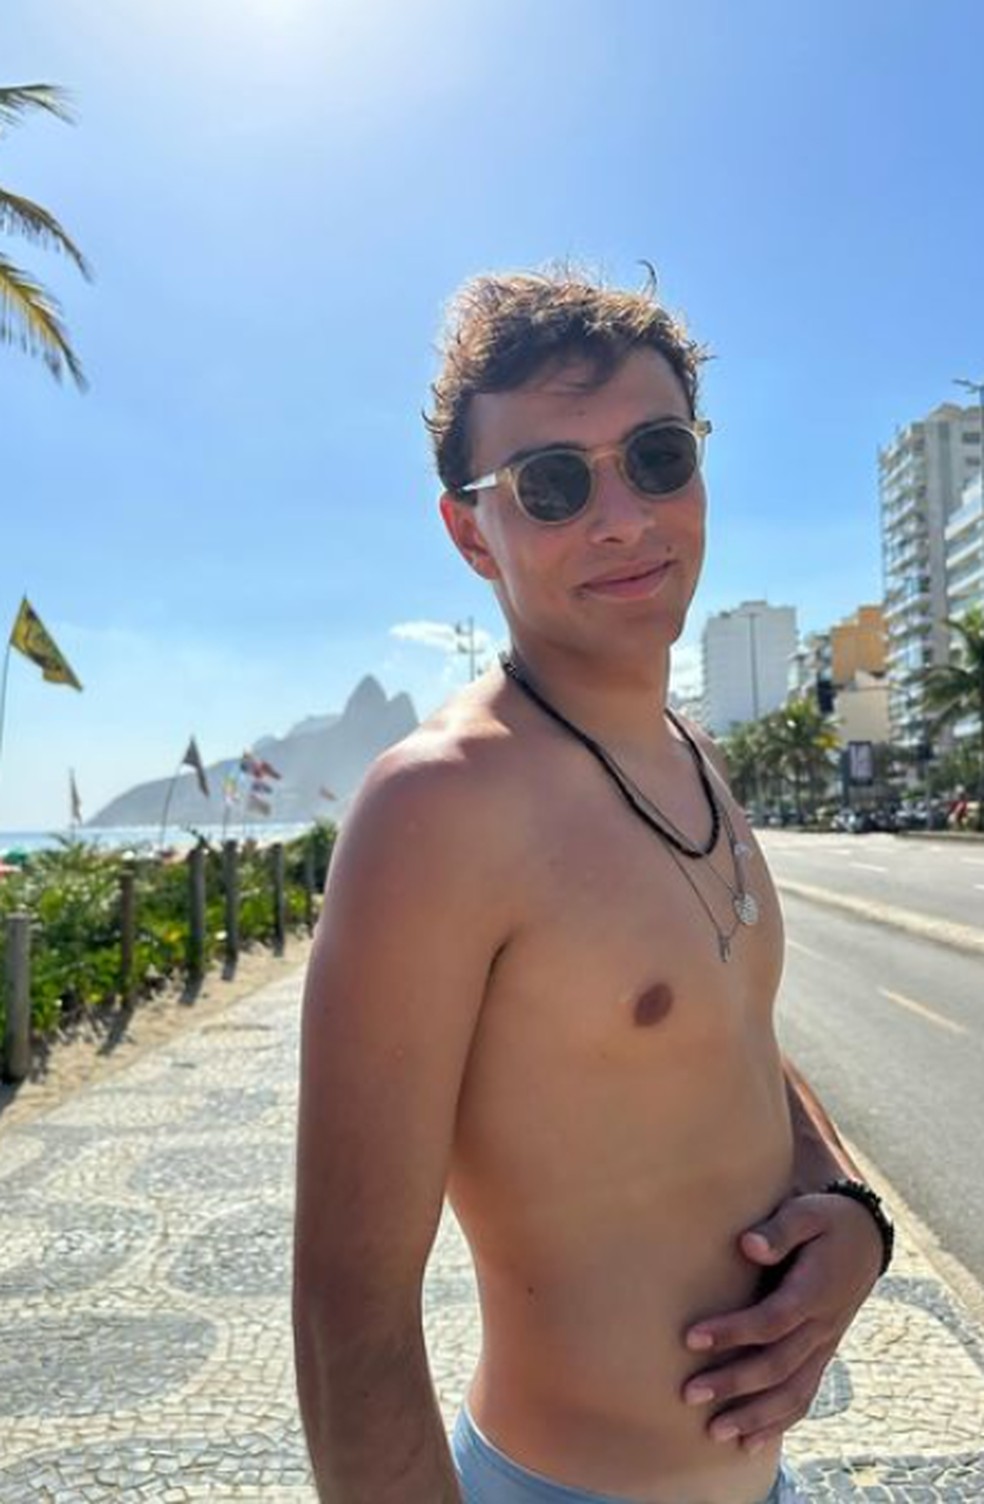 O surfista português João Maria Pereira, de 18 anos — Foto: Reprodução/Instagram